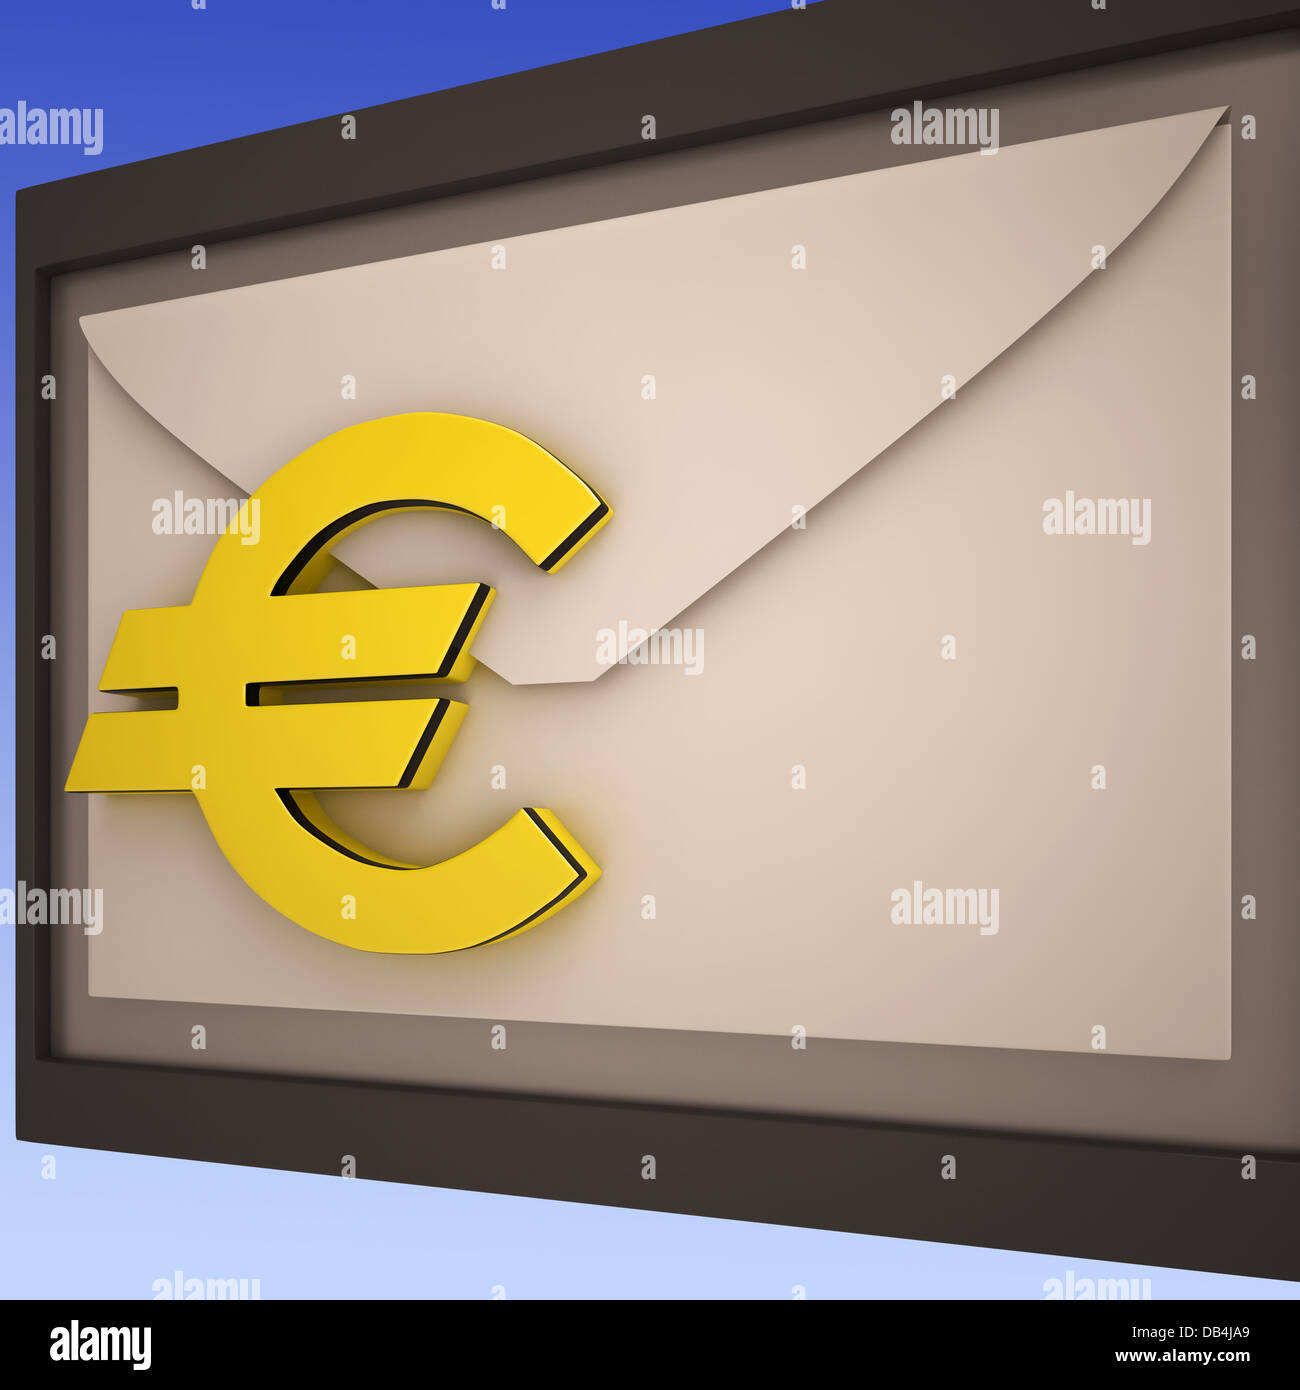 Euro On Envelope Shows European Correspondence Stock Photo